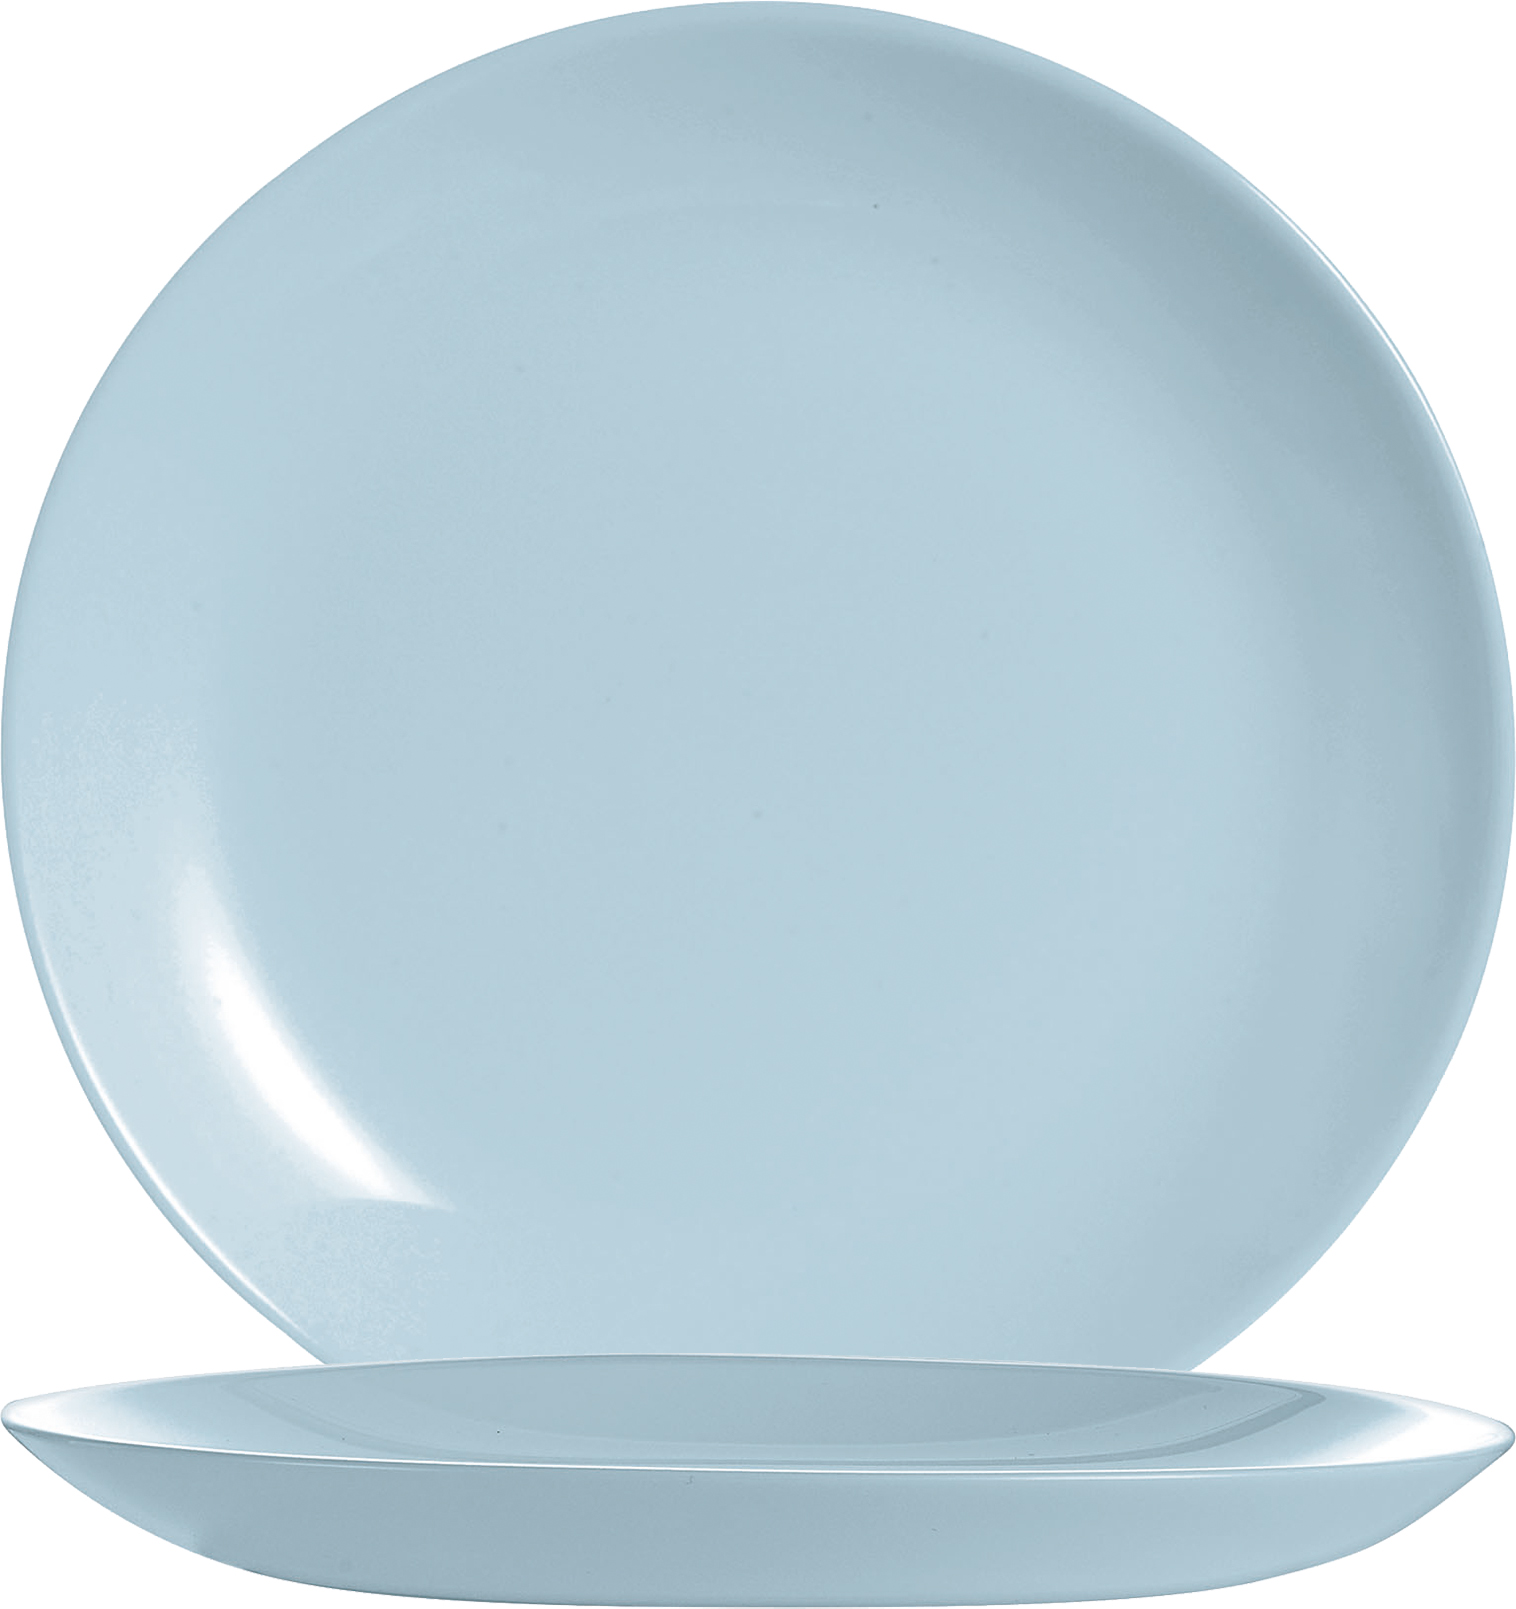 Desserteller DIWALI, Farbe: Paradise blue, Durchmesser: 19 cm, Coupteller - ohne breite Fahne Opalglas (gehärtet)